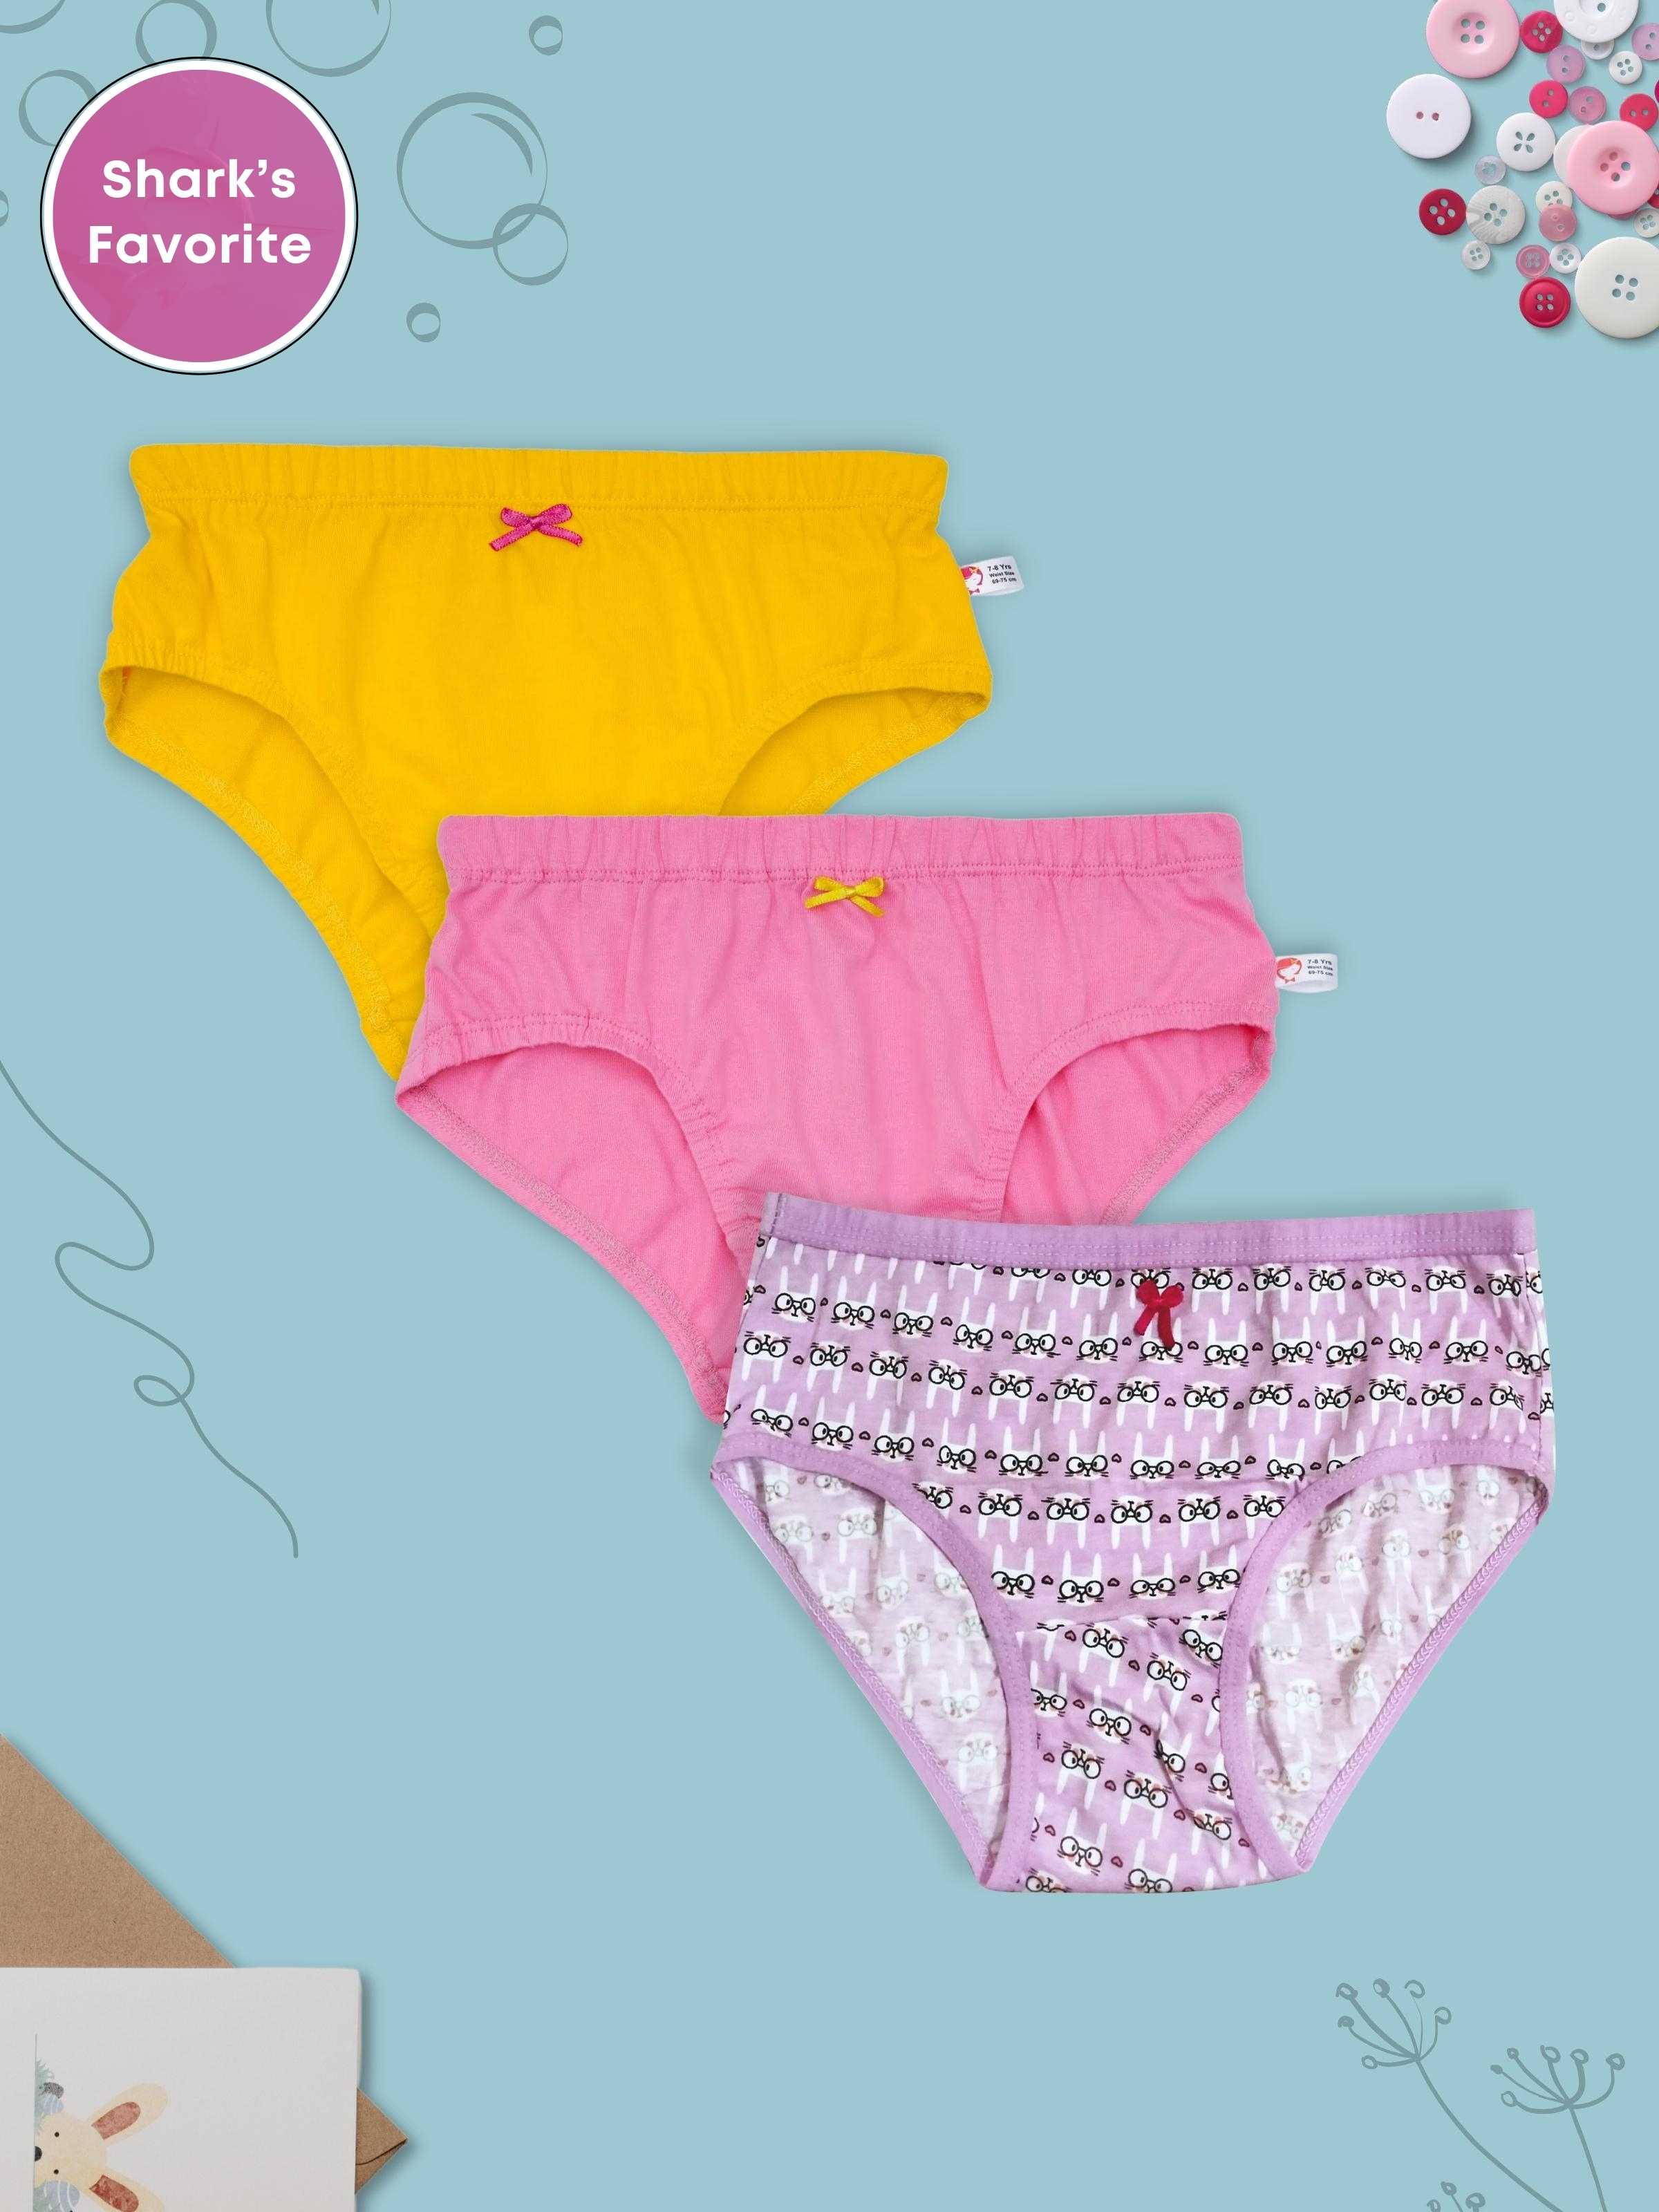 New Carter's 3 Pack Pair Underwear Girls Panties 6 8 12 14 year Unicorn  Rainbow